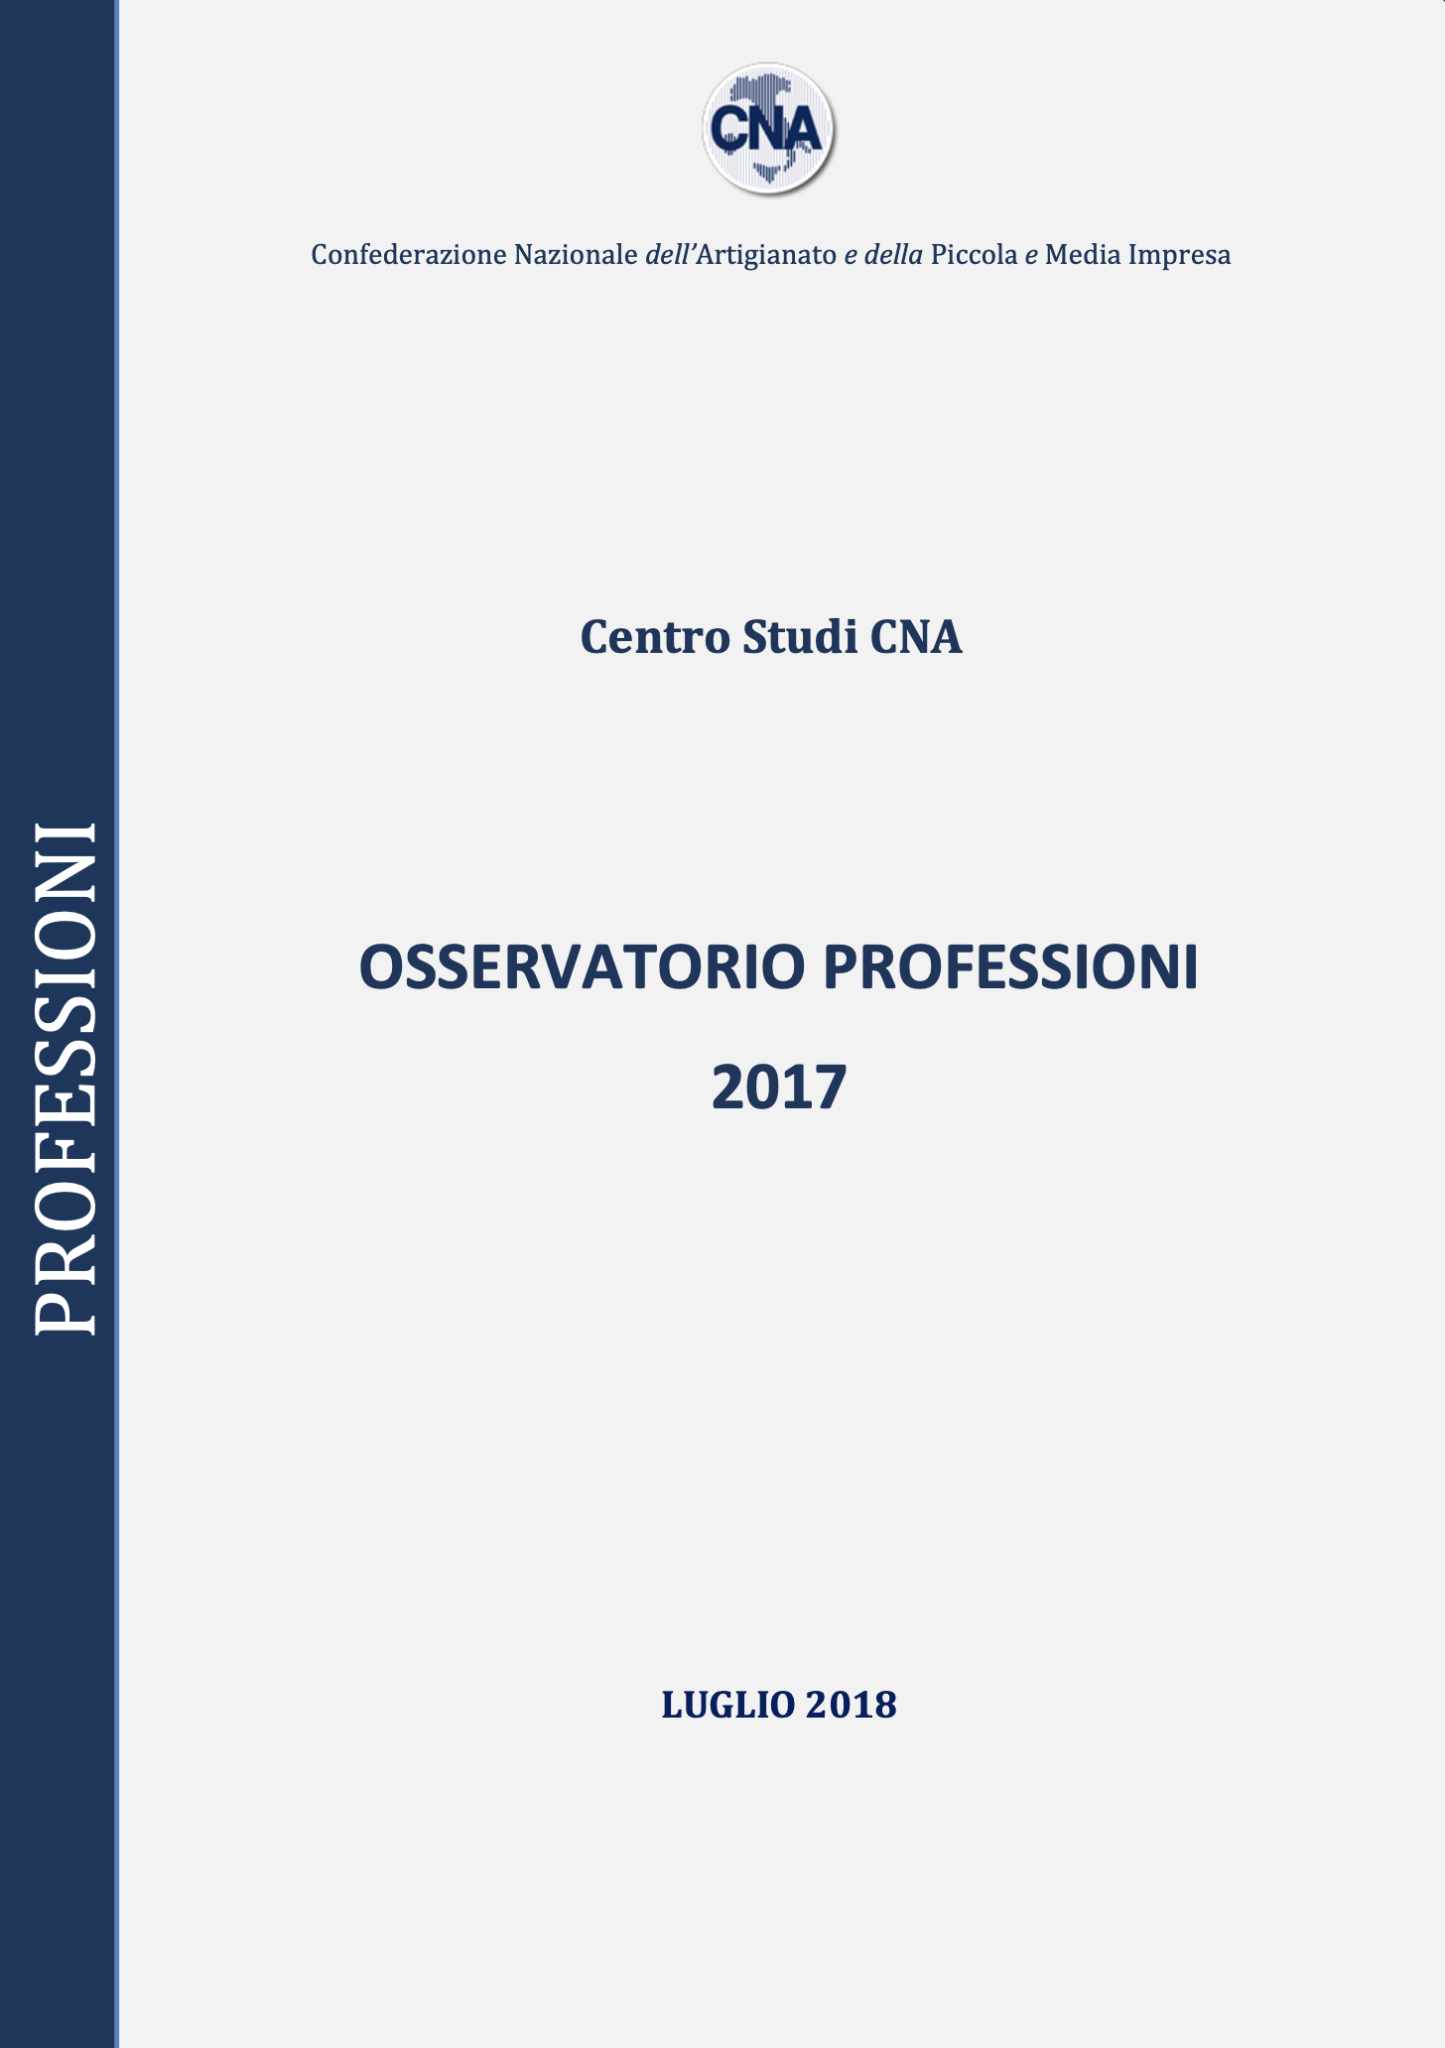 OSSERVATORIO PROFESSIONI 2017